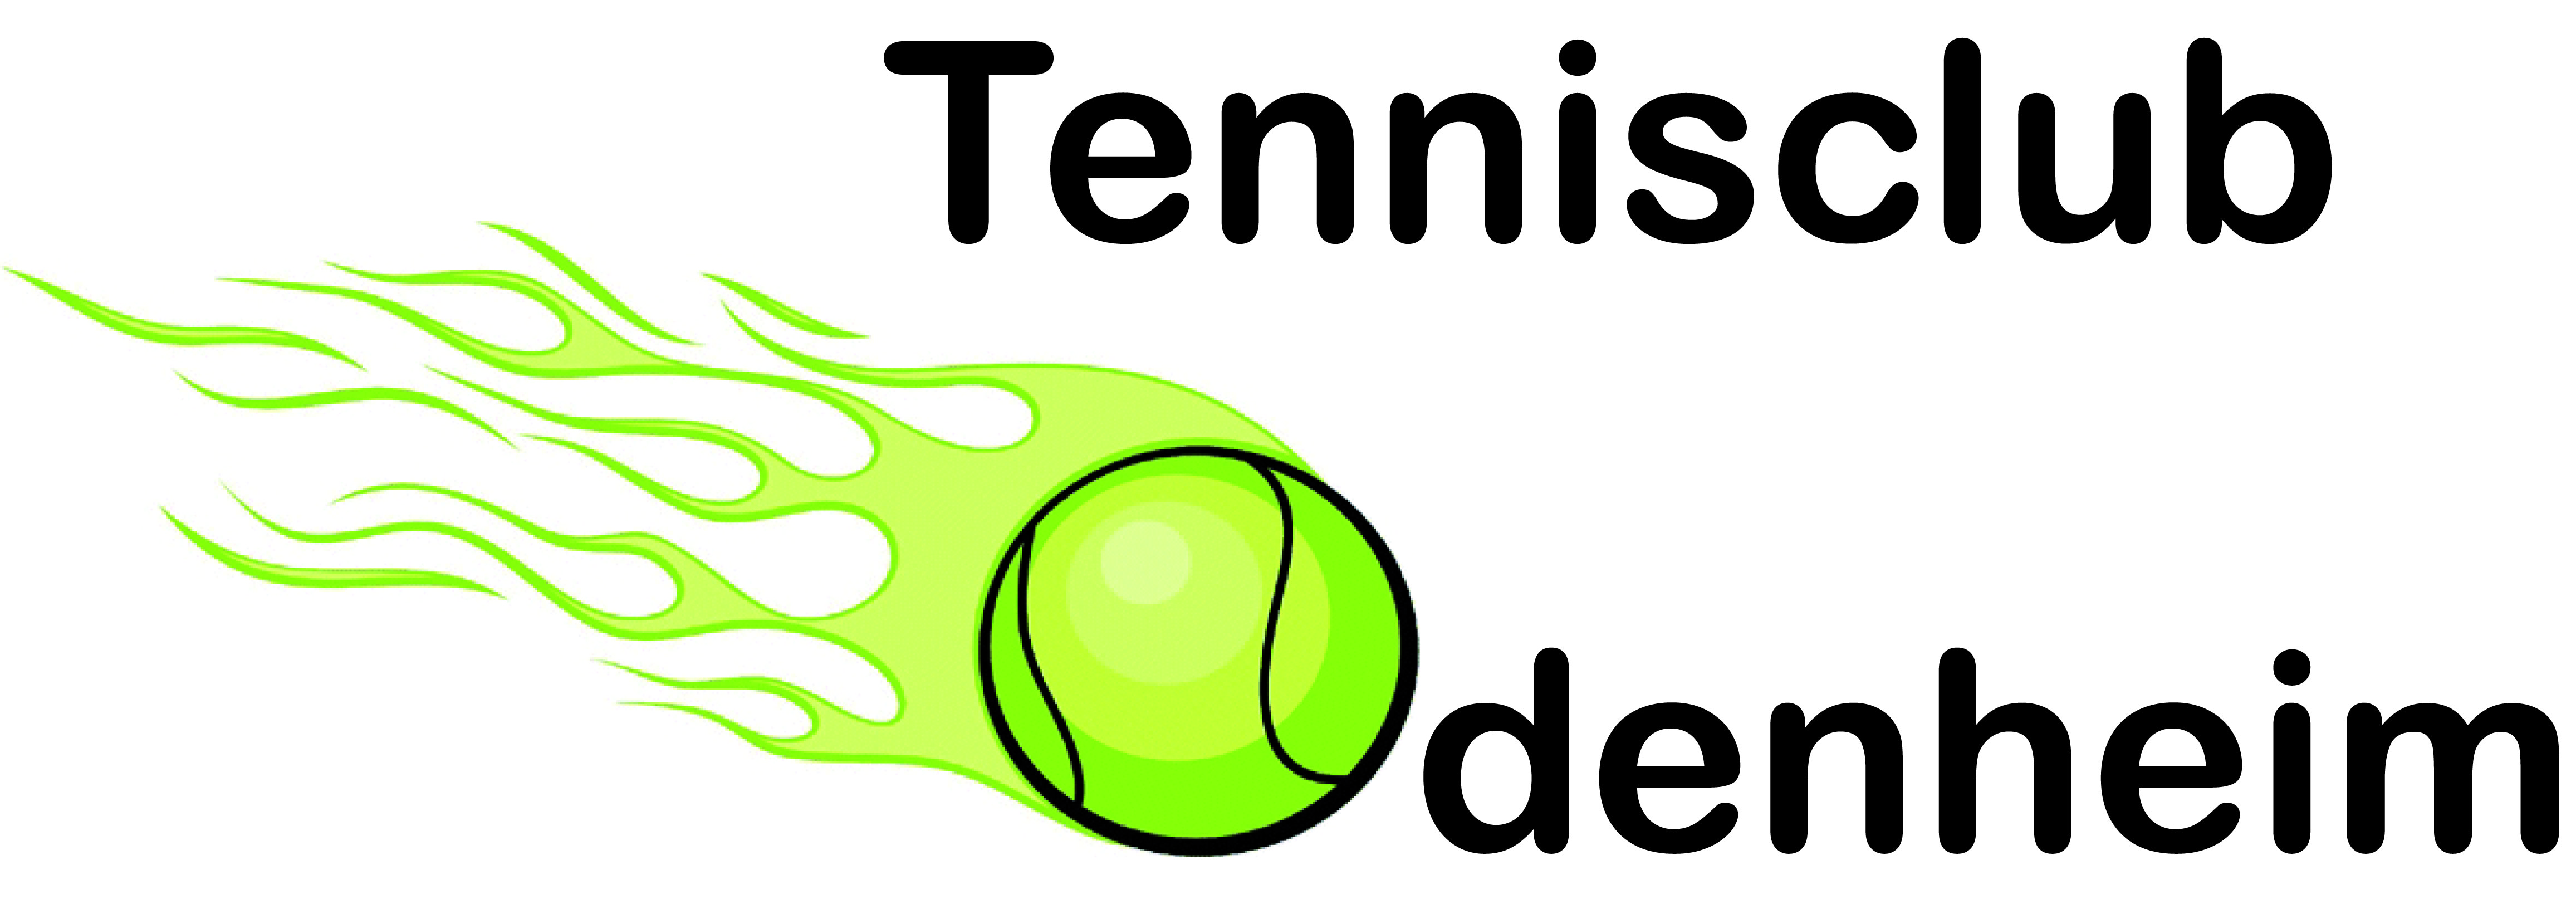 Tennisclub  Odenheim